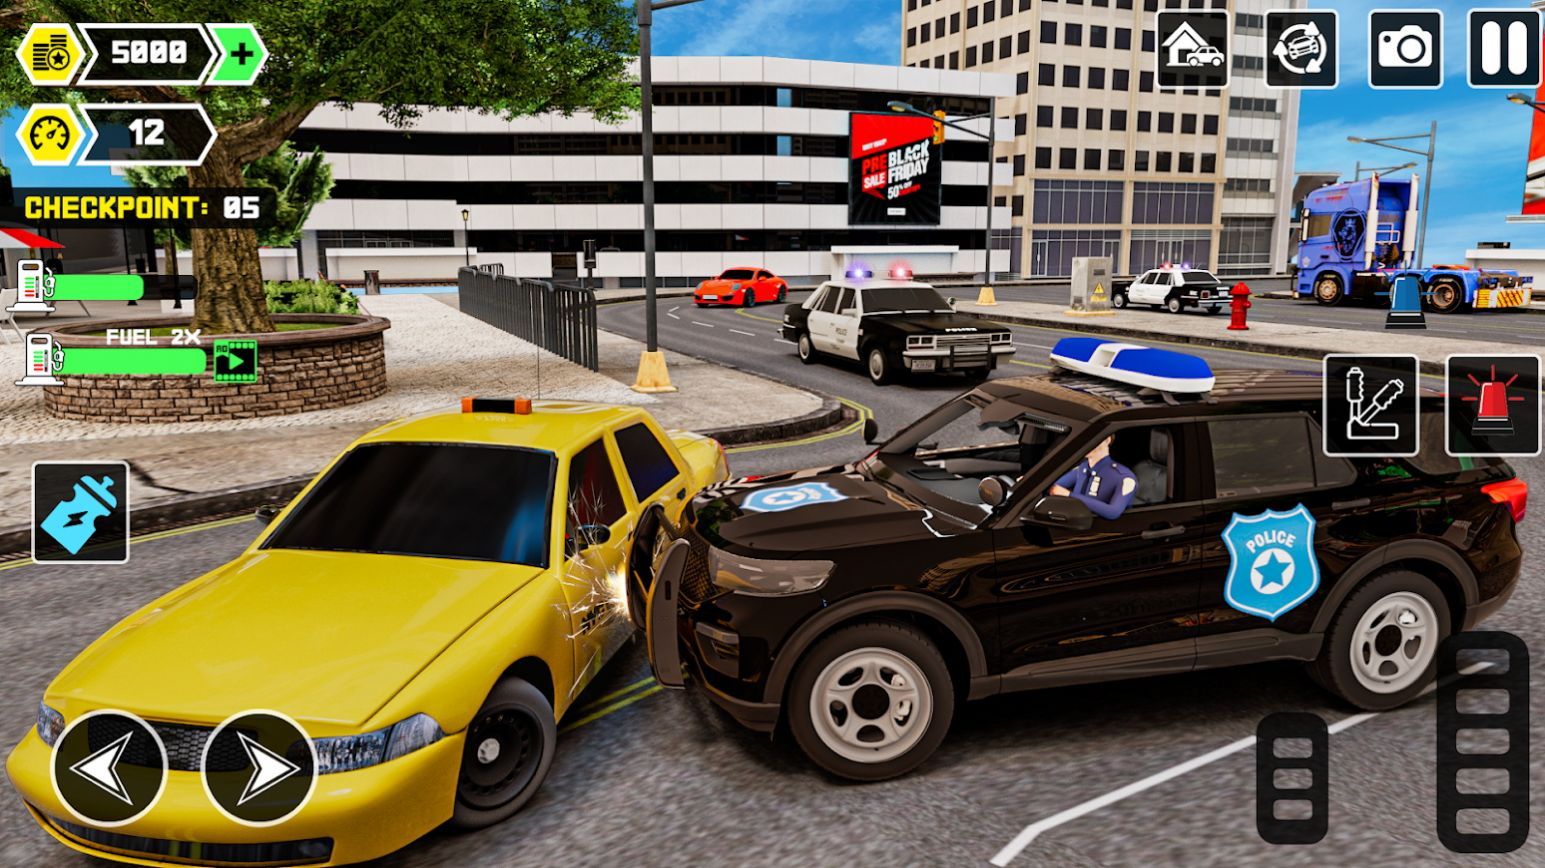 战术小队警察模拟器游戏官方版截图1: